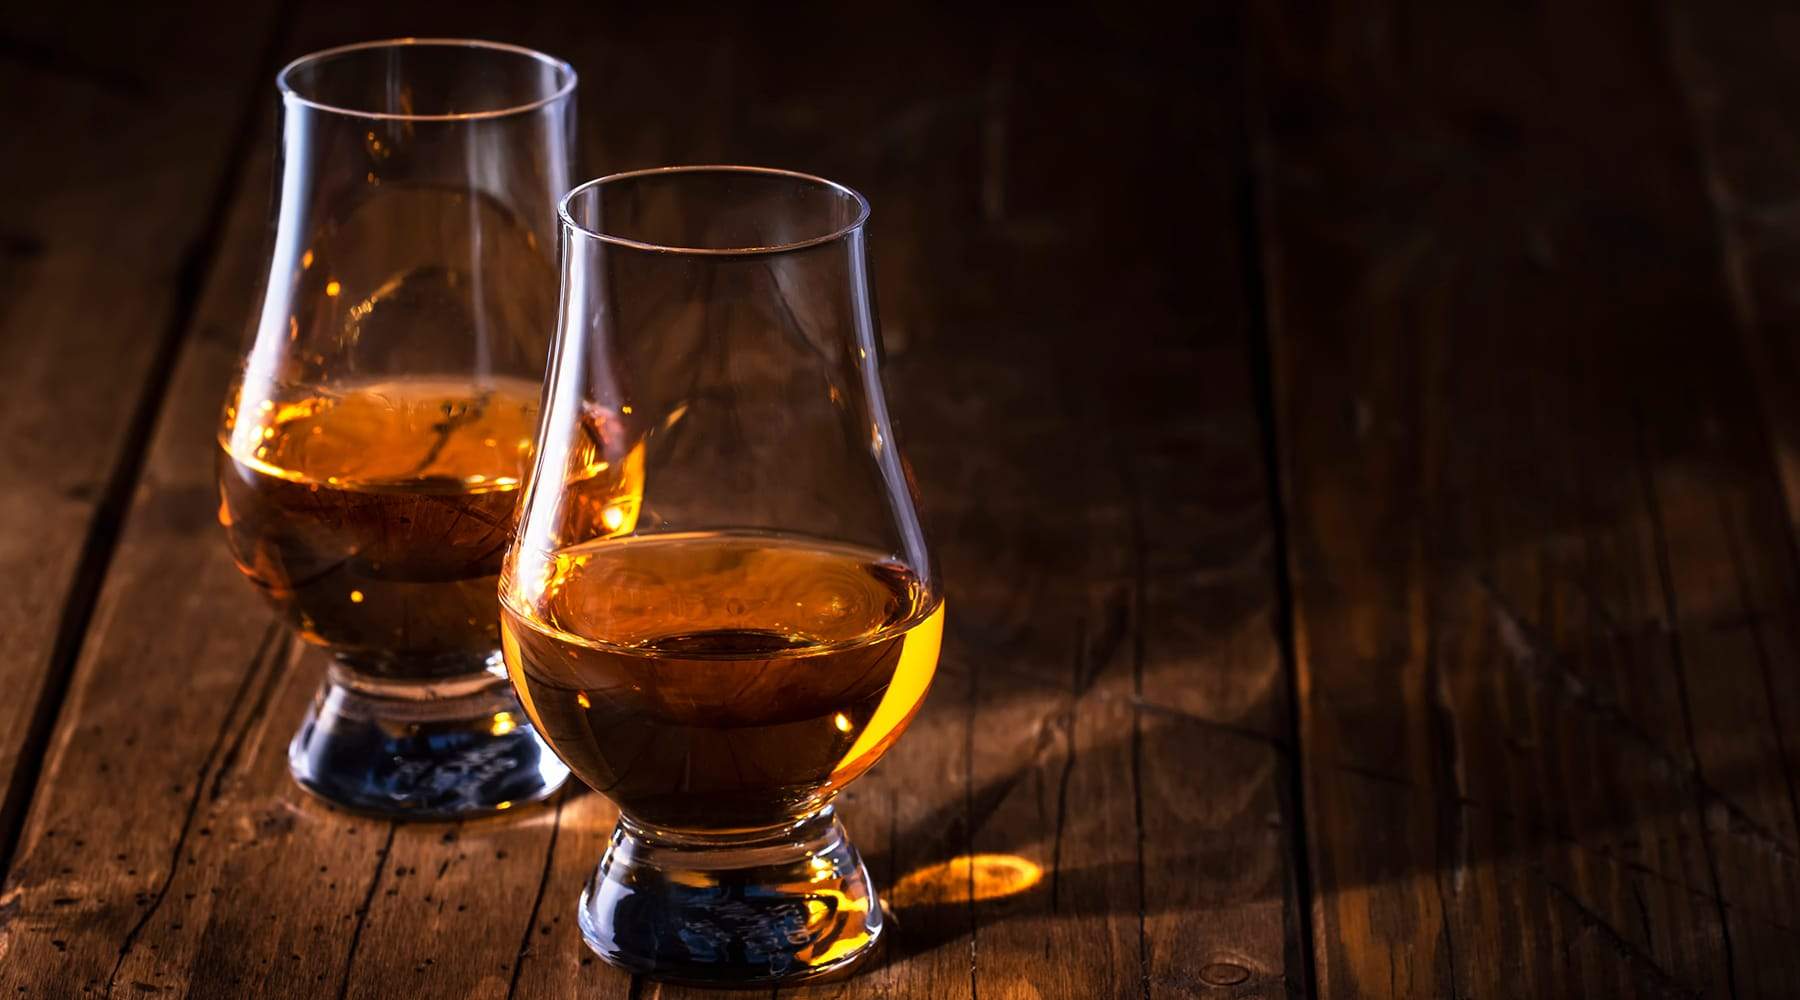 A review of Skene Scotch Whisky’s Blair Athol 2015